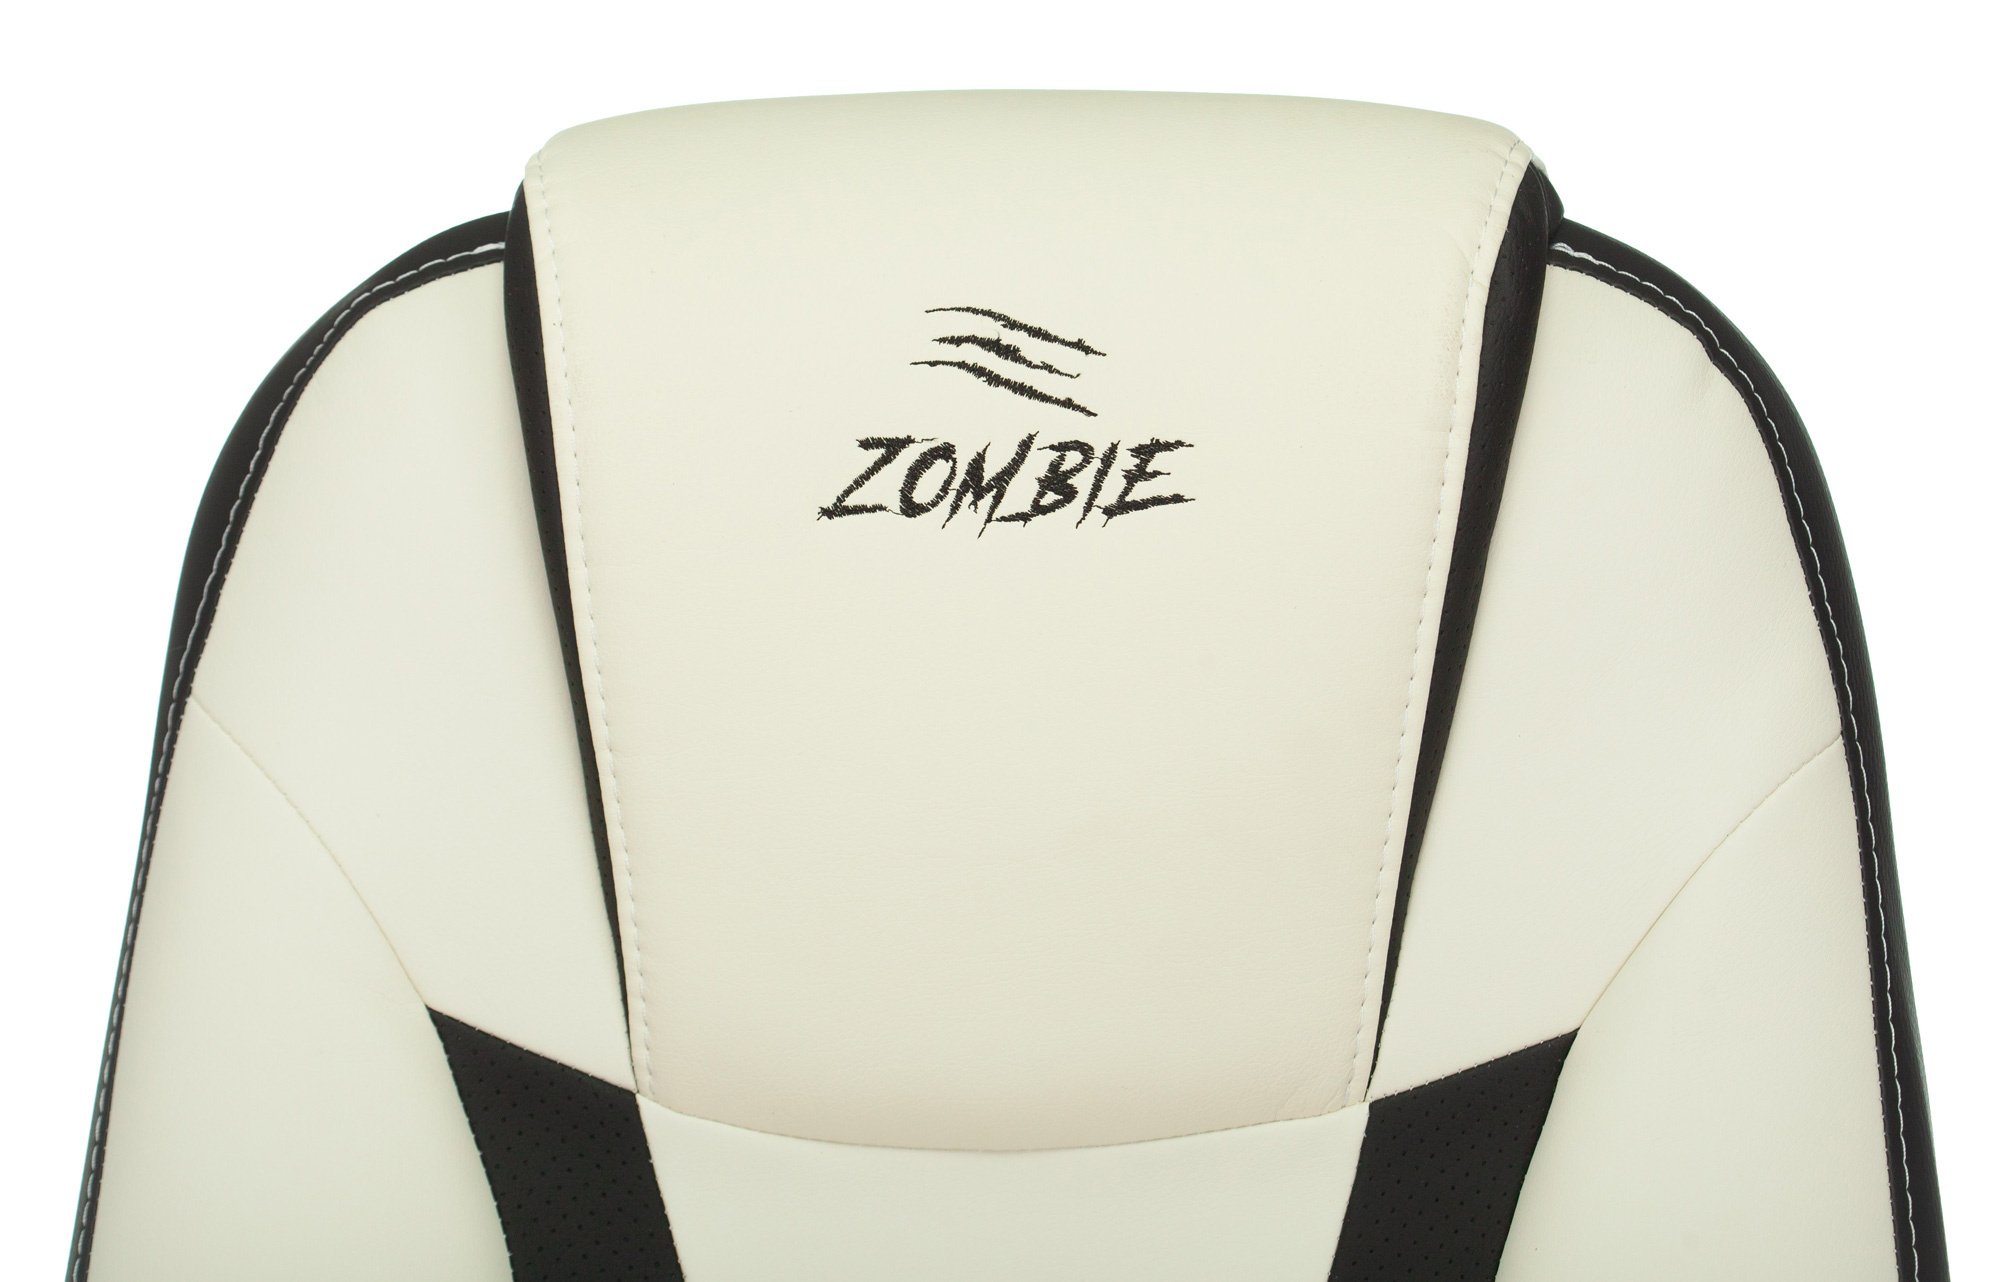 компьютерное кресло zombie 8 игровое обивка искусственная кожа цвет черный